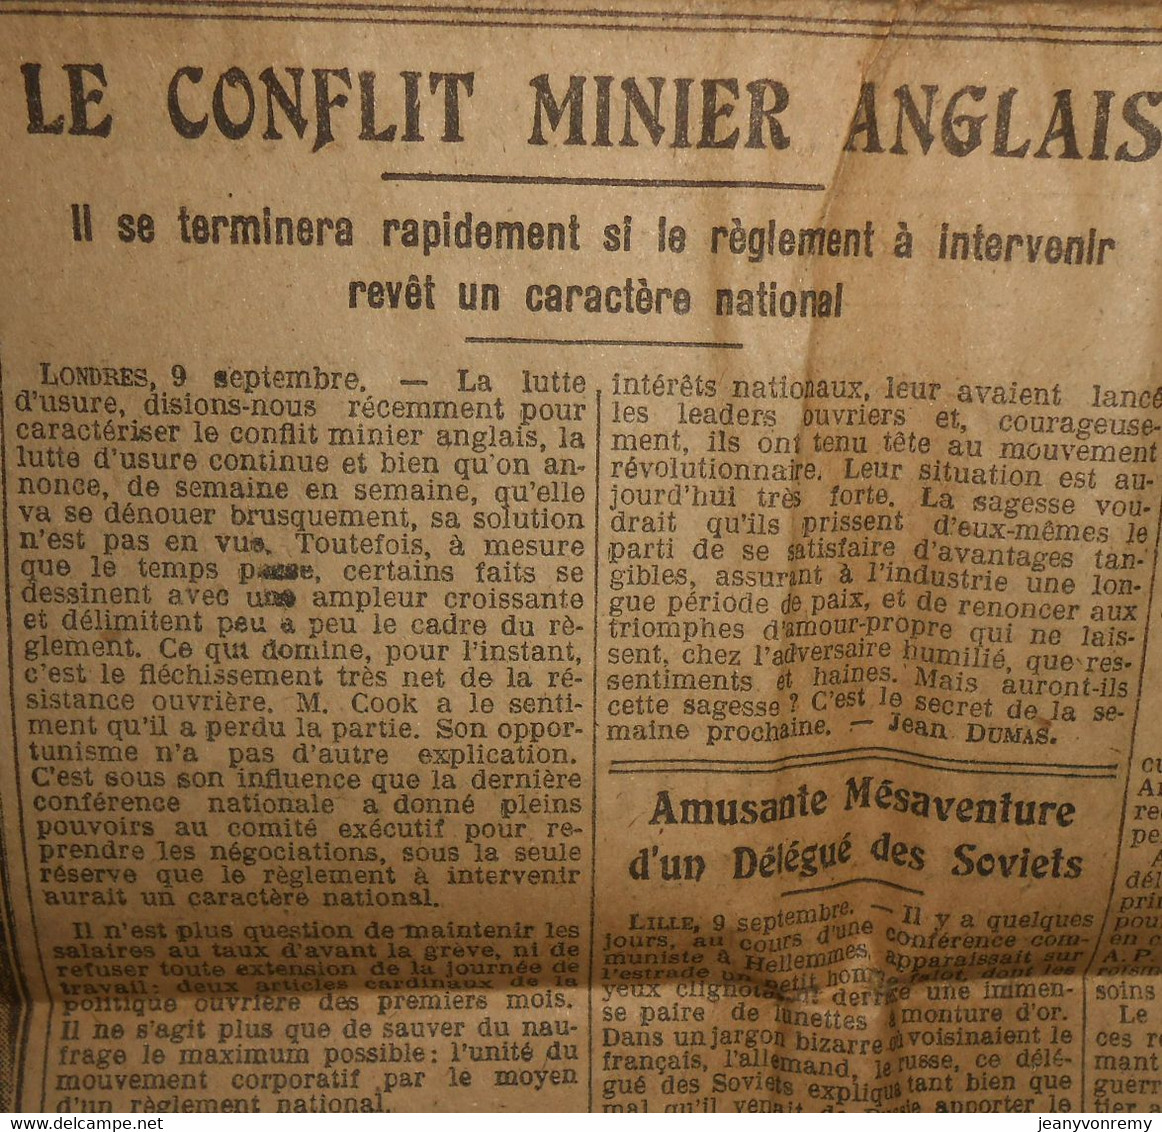 Le petit Marseillais. Dernière édition. Vendredi 10 Septembre 1926.